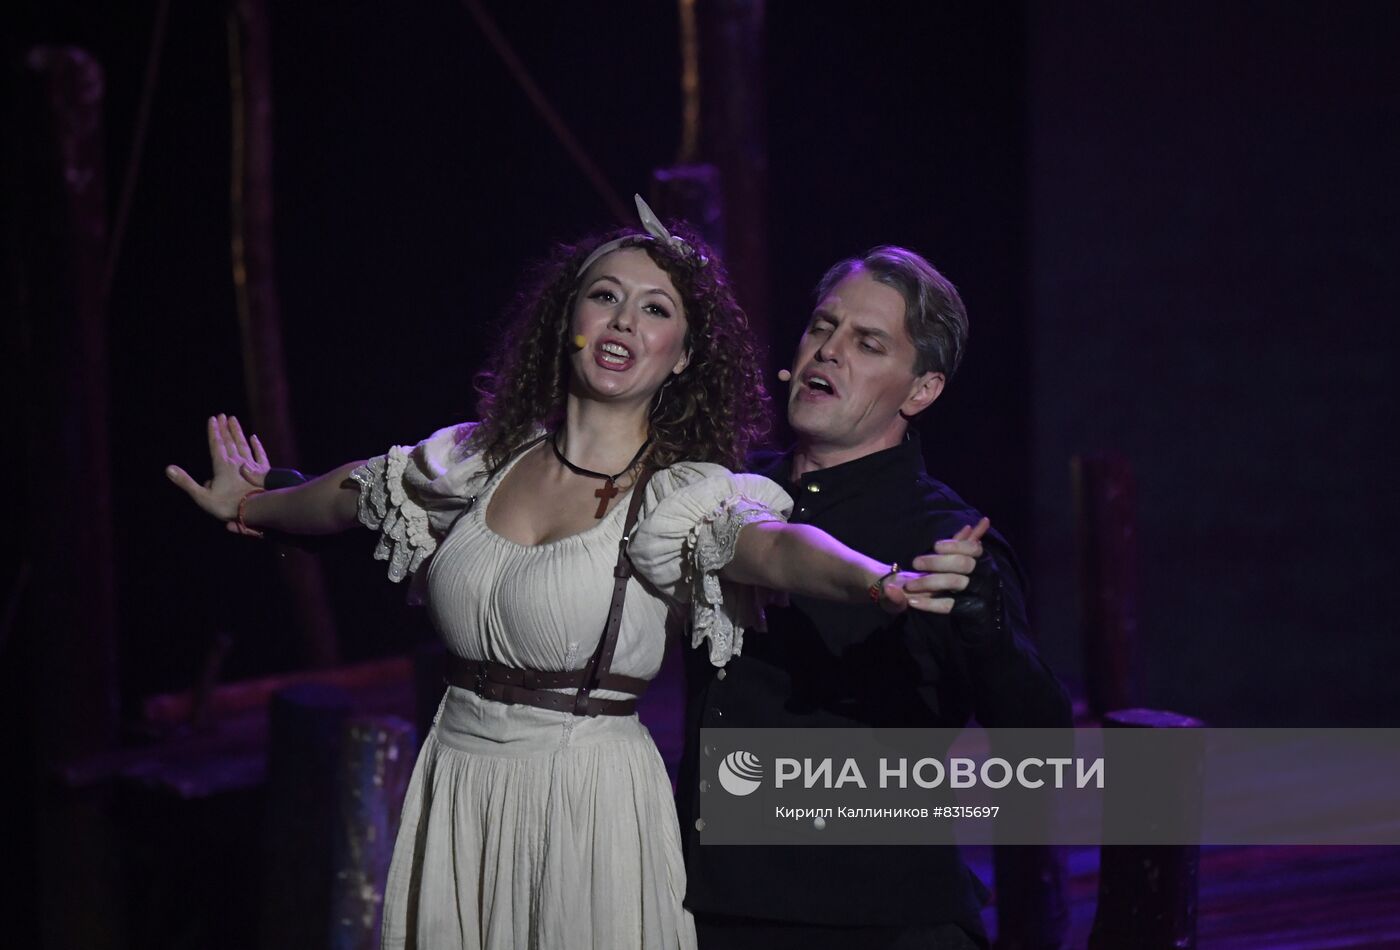 Показ мюзикла "Дон Жуан" с Н. Гришаевой и И. Ожогиным